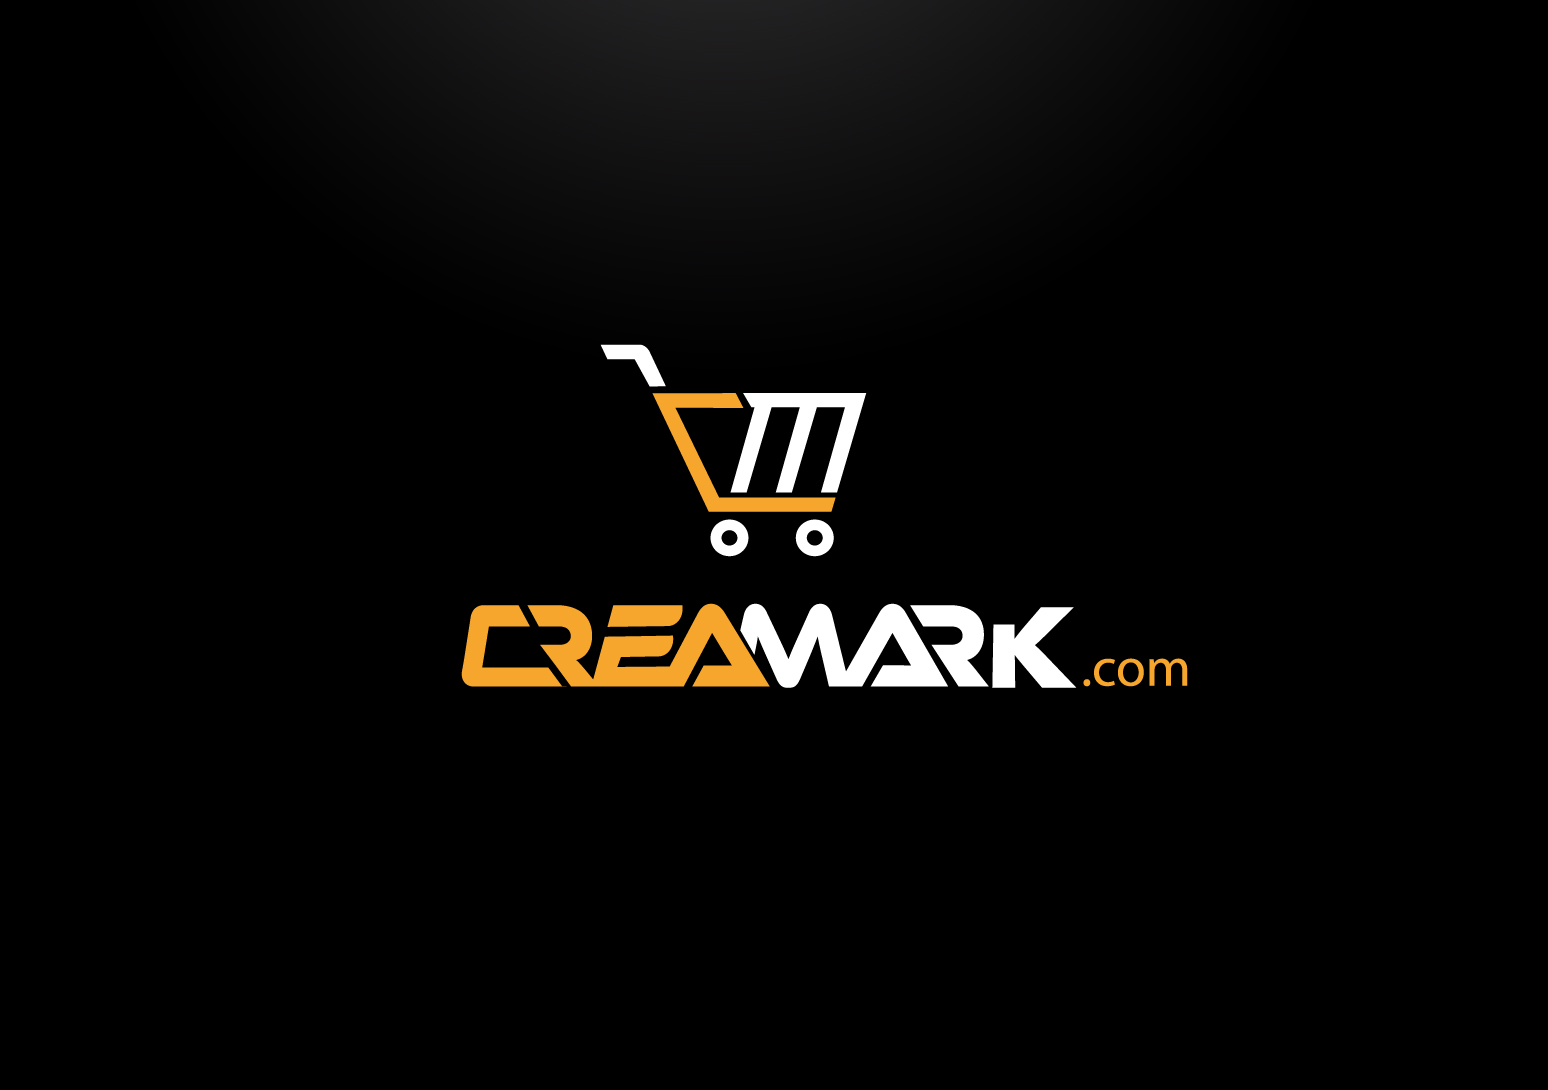 CreaMark